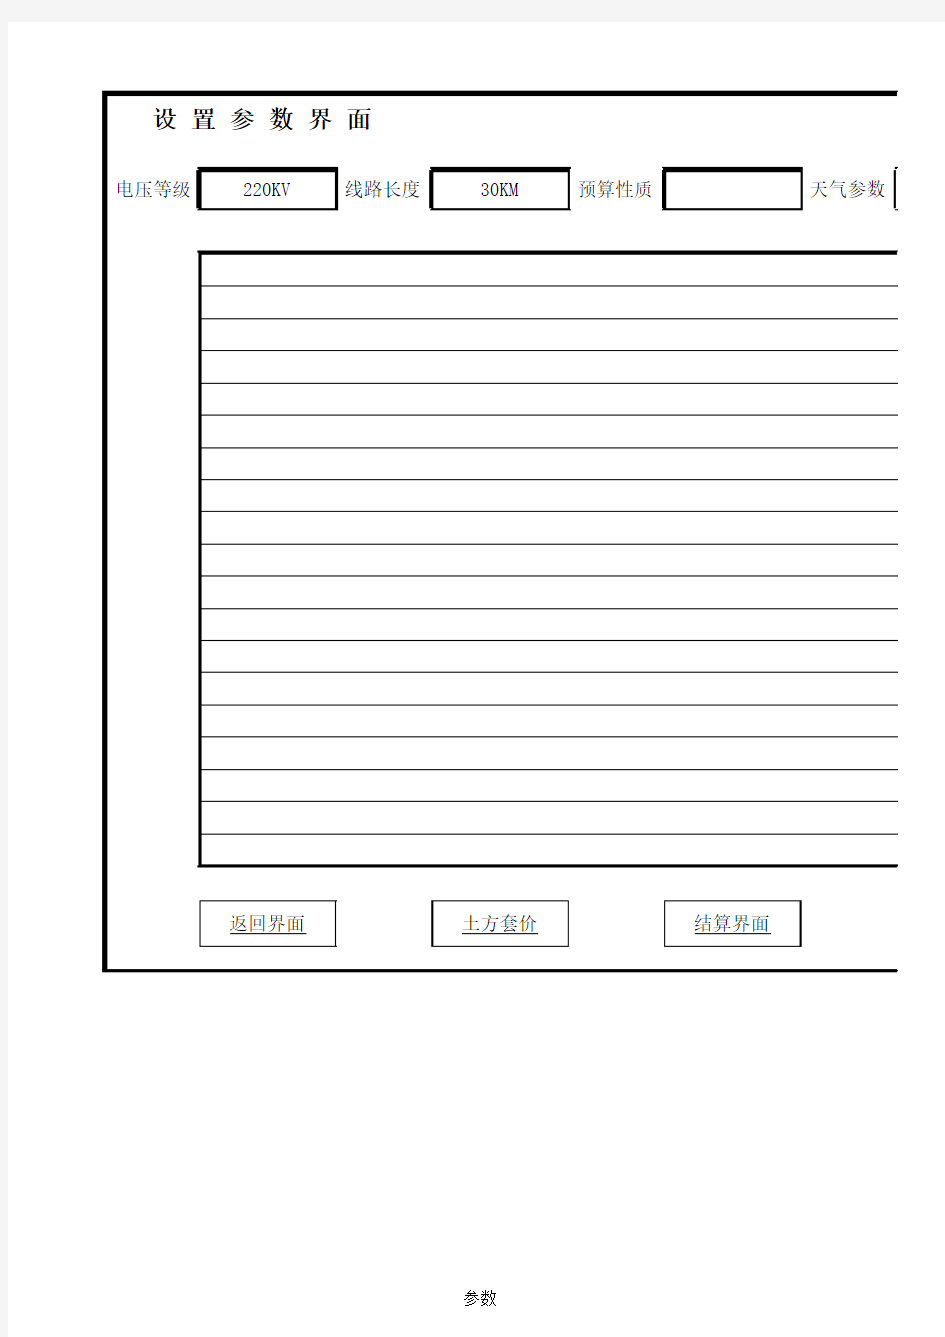 非常漂亮的Excel表格界面设计实例